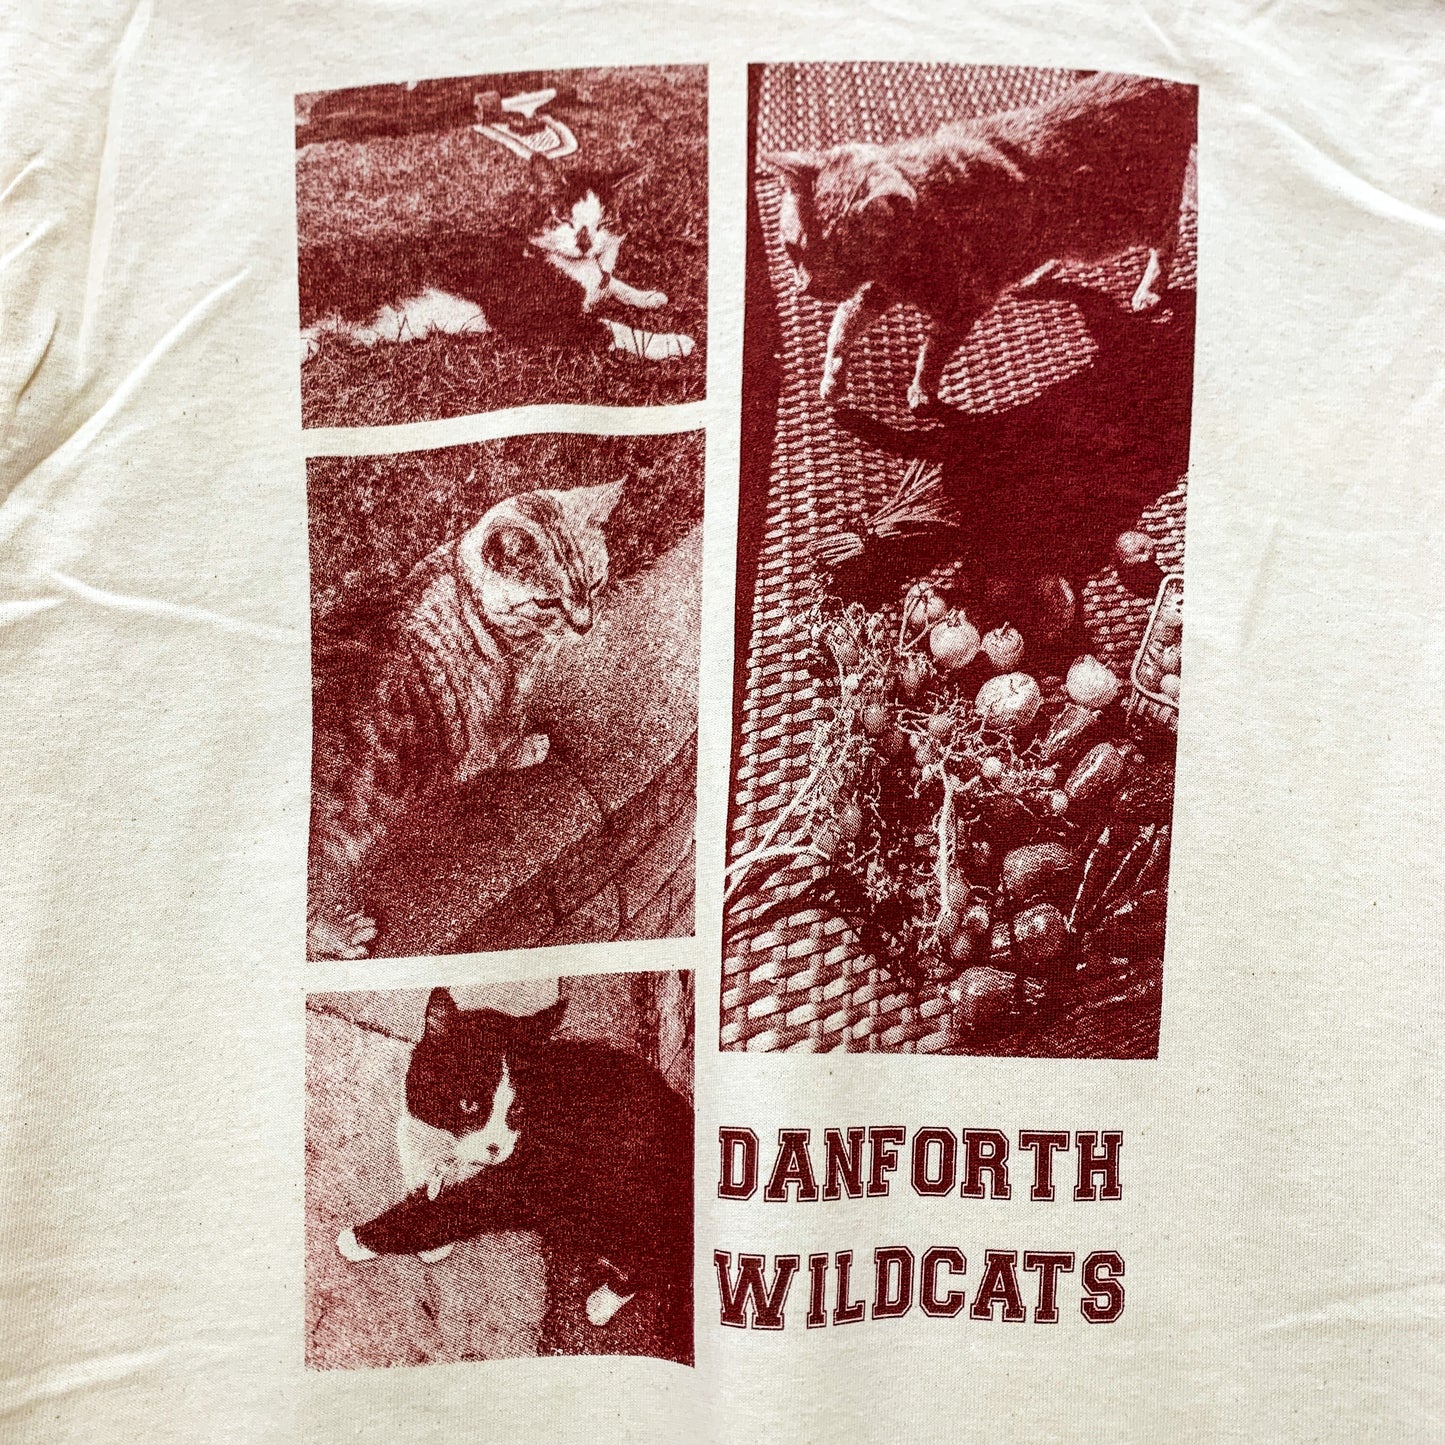 Danforth Wildcats 2.0 Tee